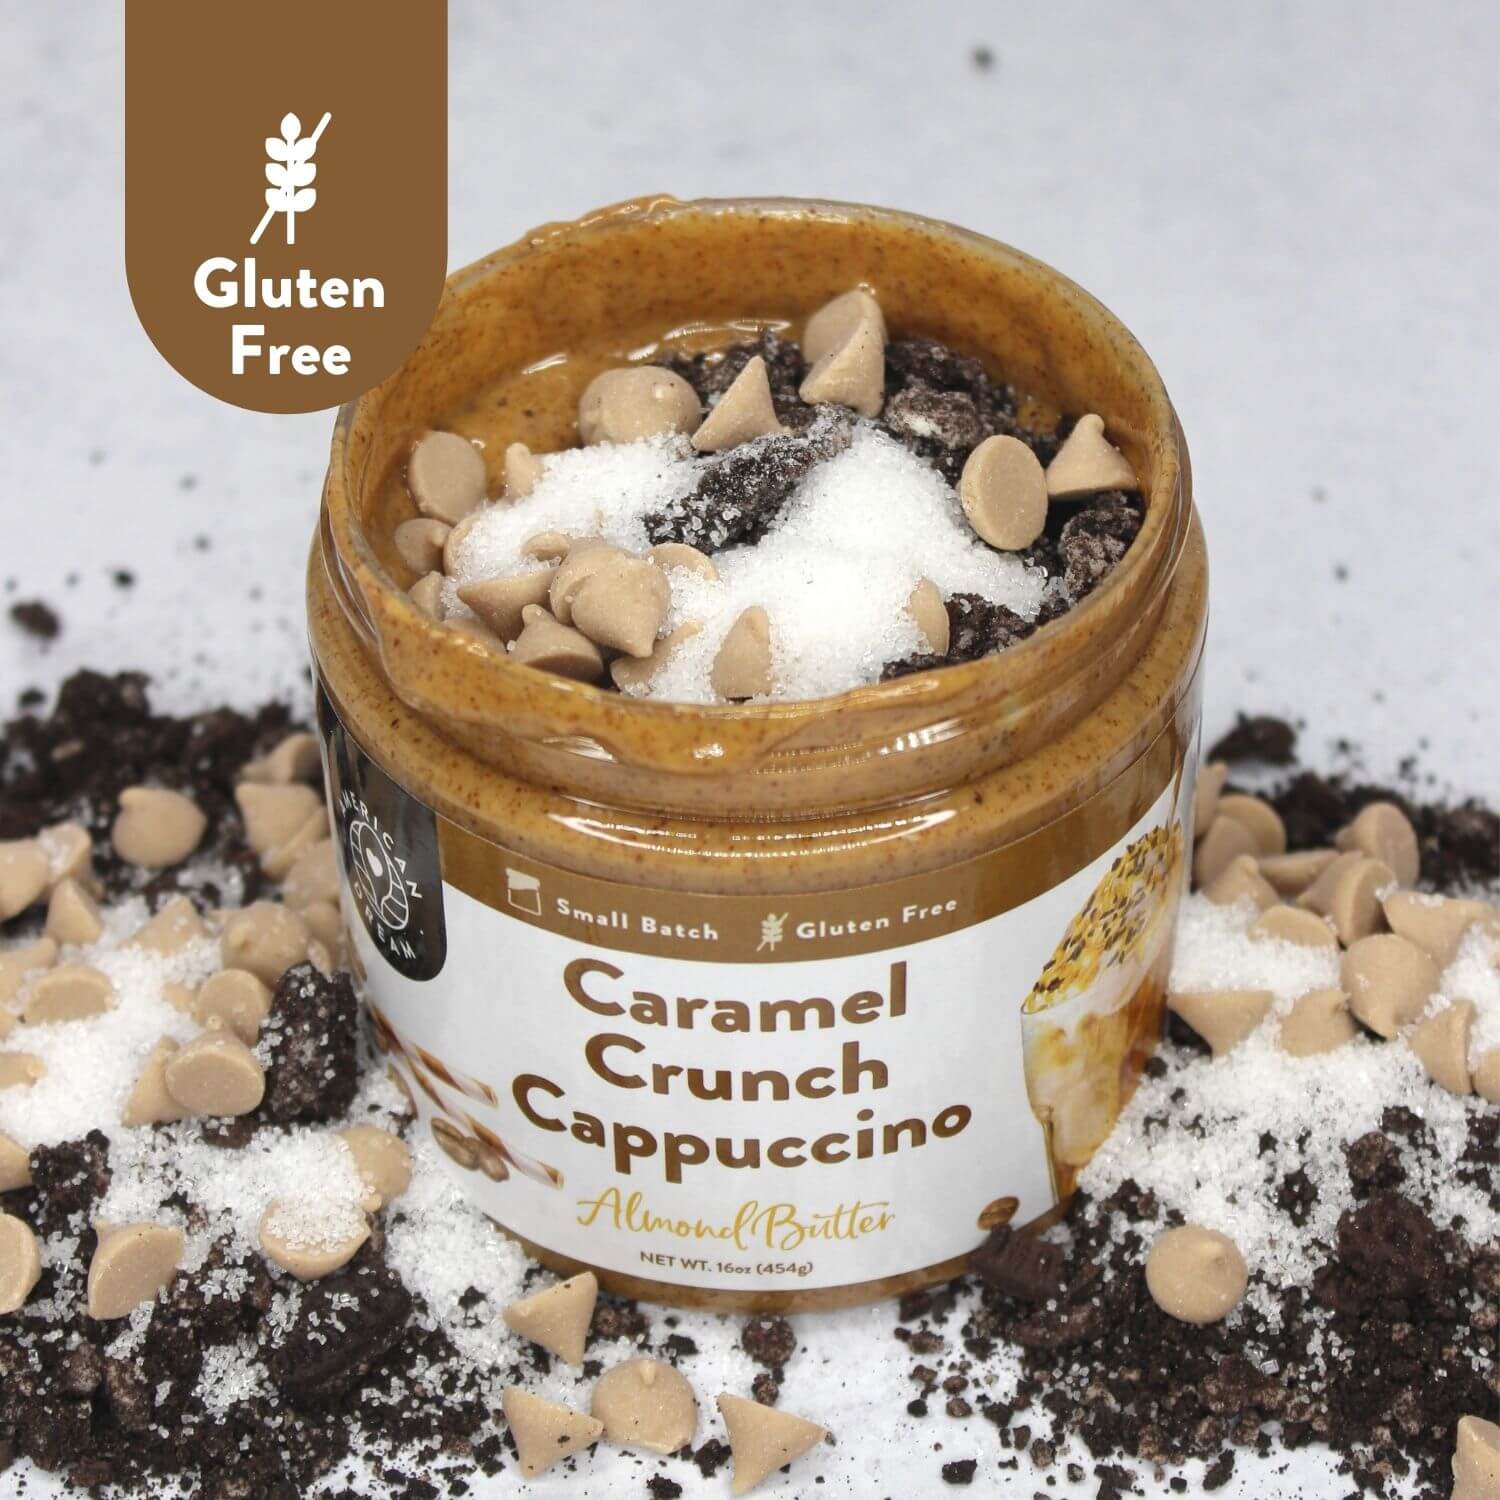 Gluten-Free Caramel Crunch Cappuccino Almond Butter